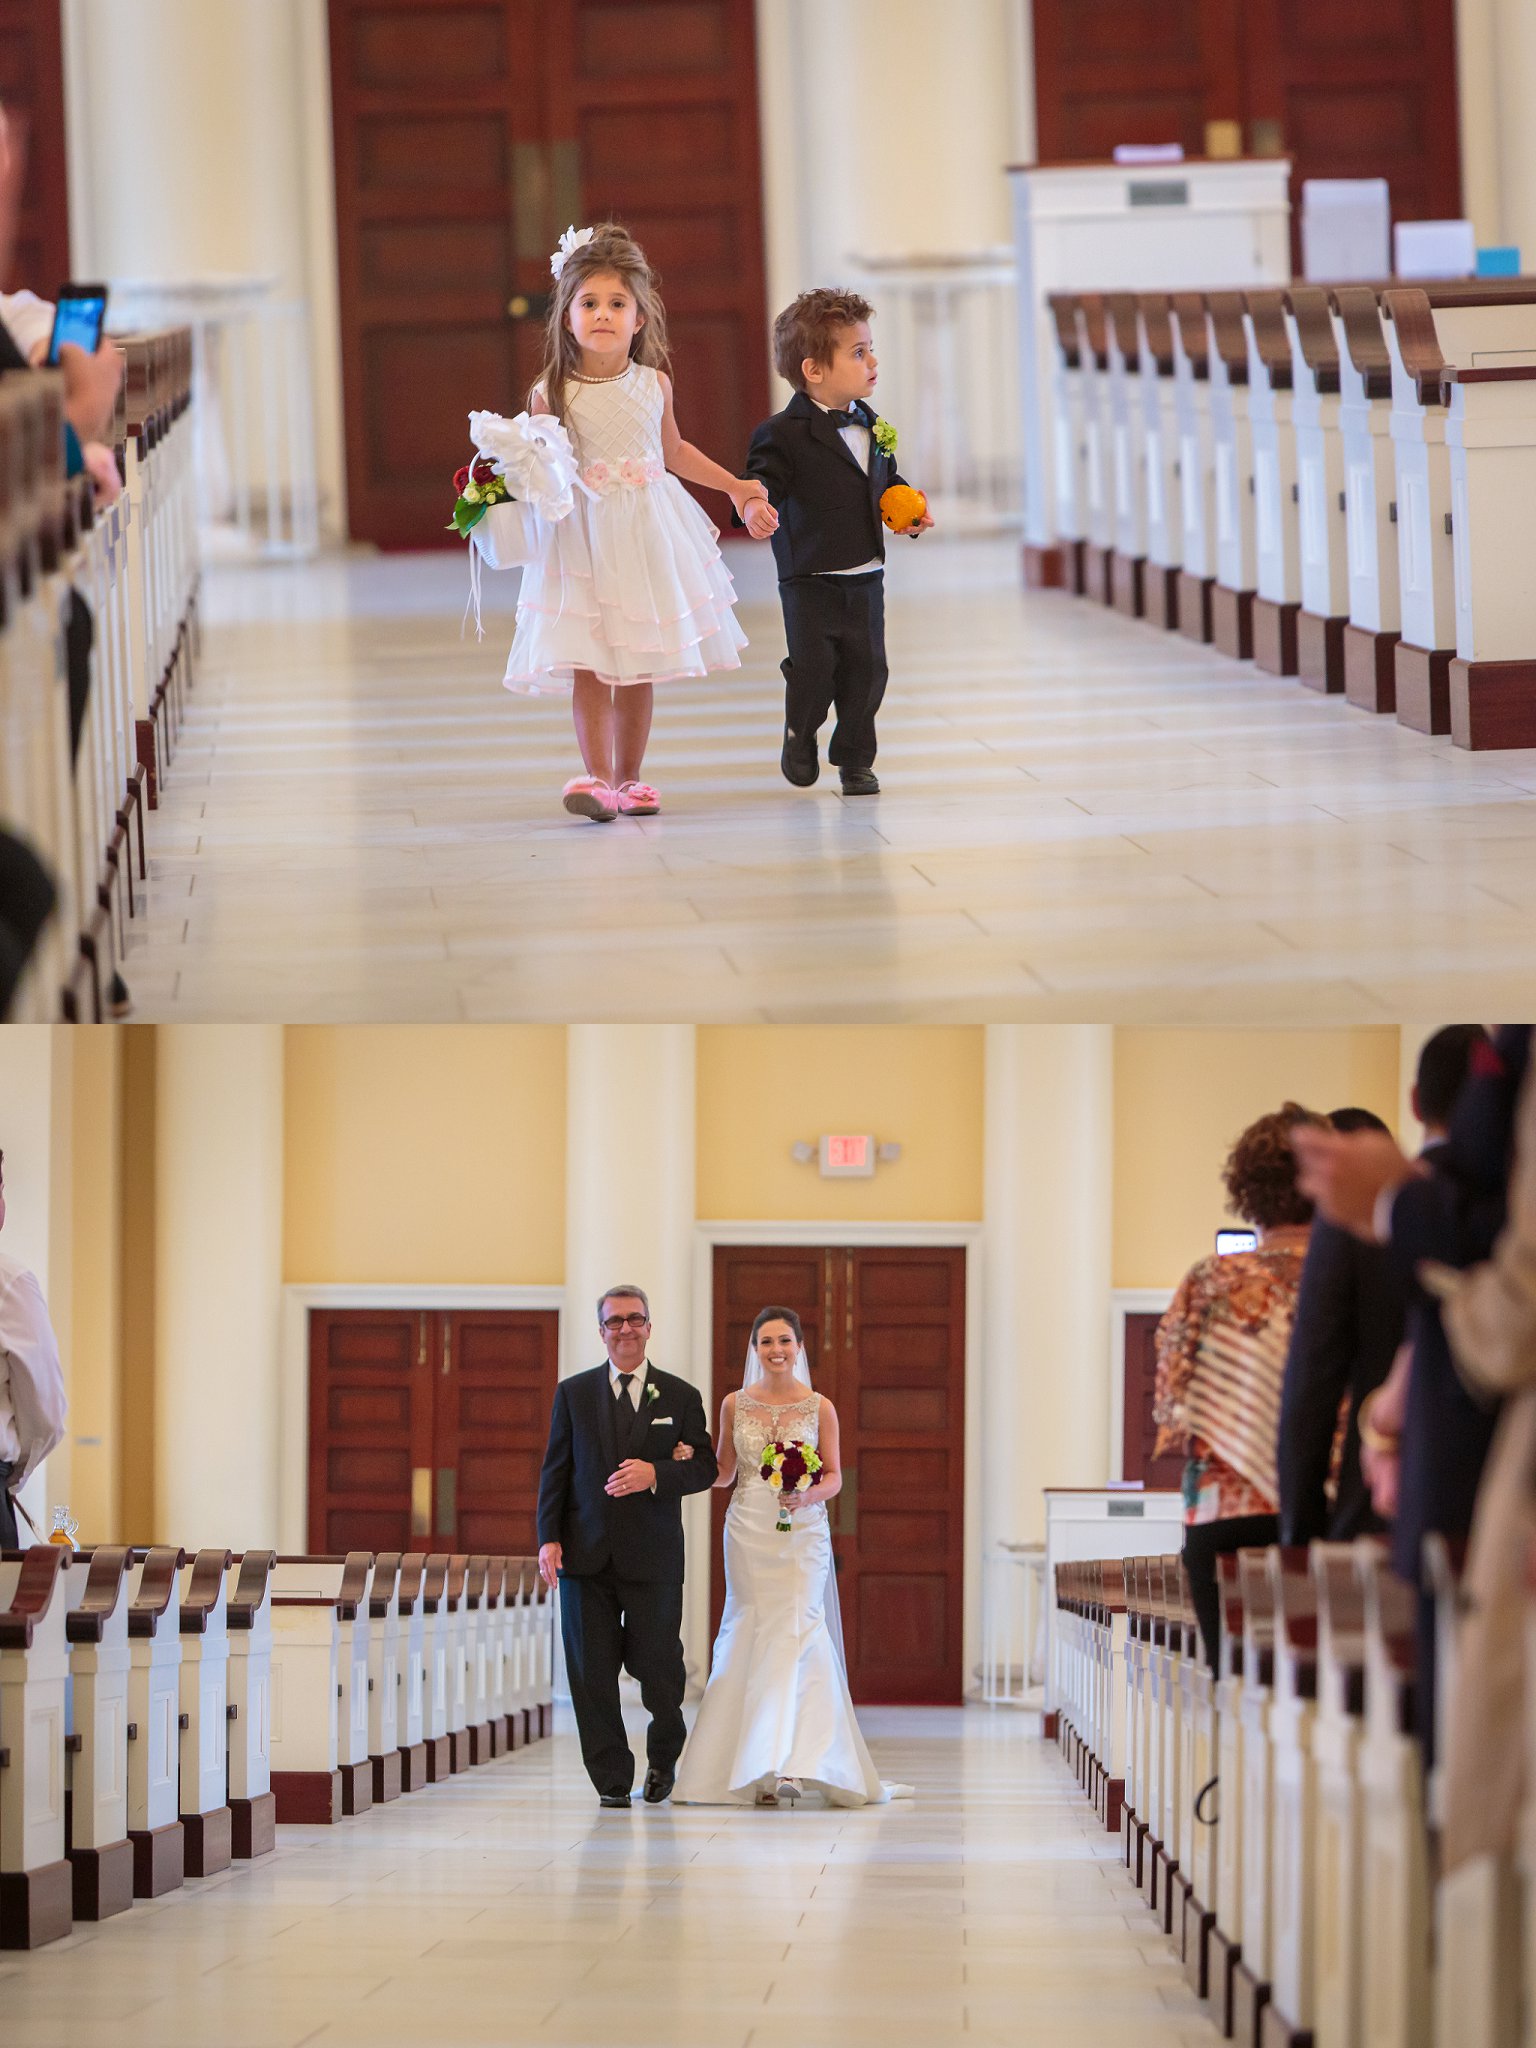 Wedding at the Baltimore Basilica - Baltimore Wedding Photographer